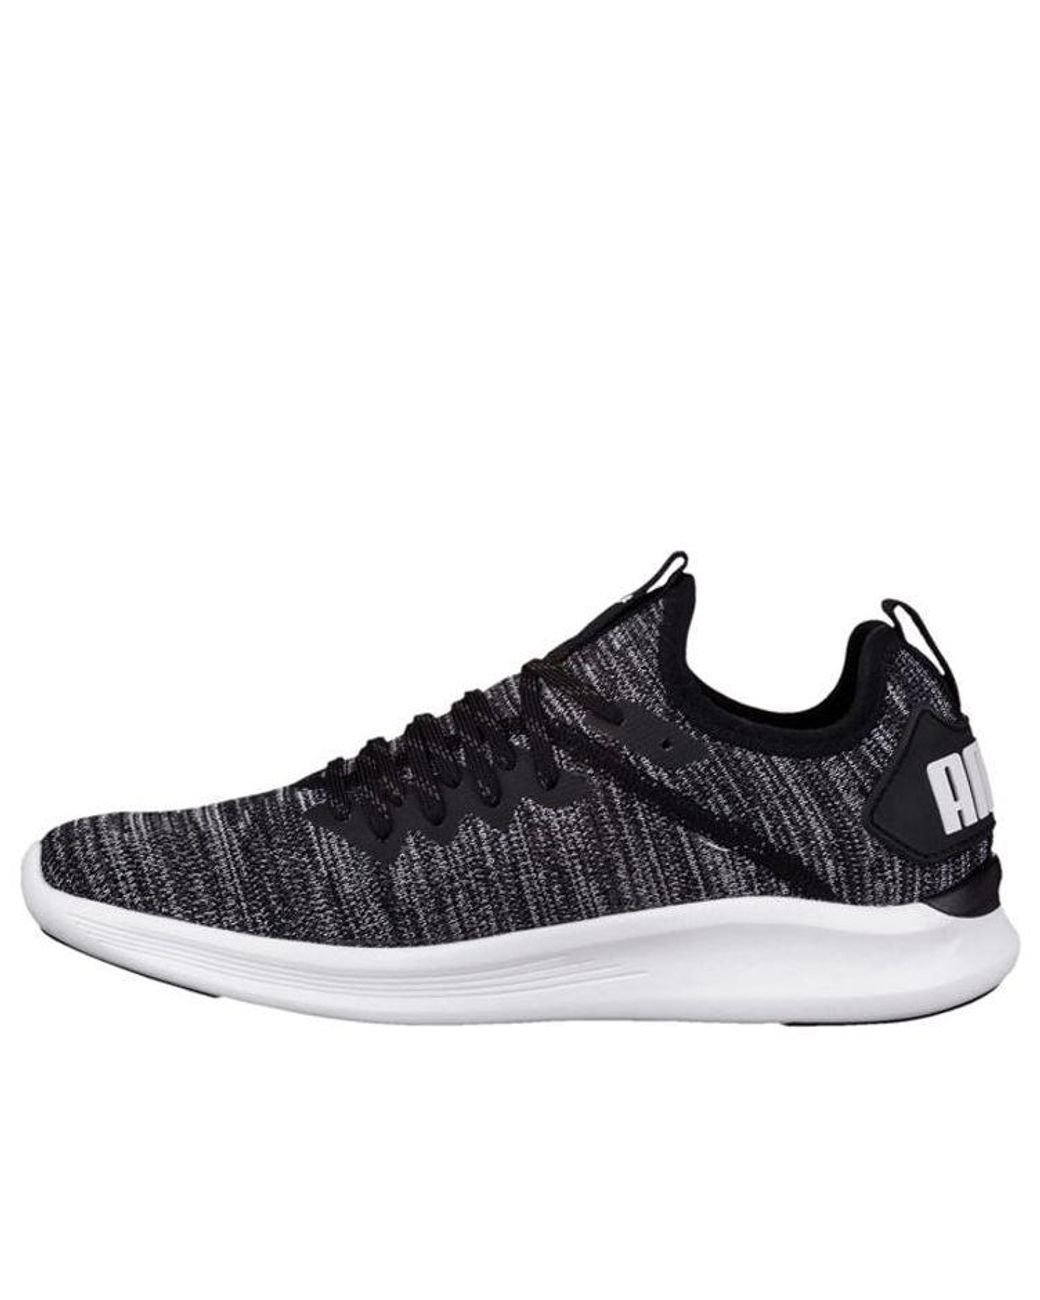 PUMA Ignite Flash Evoknit Low Running Shoes Black/grey | Lyst